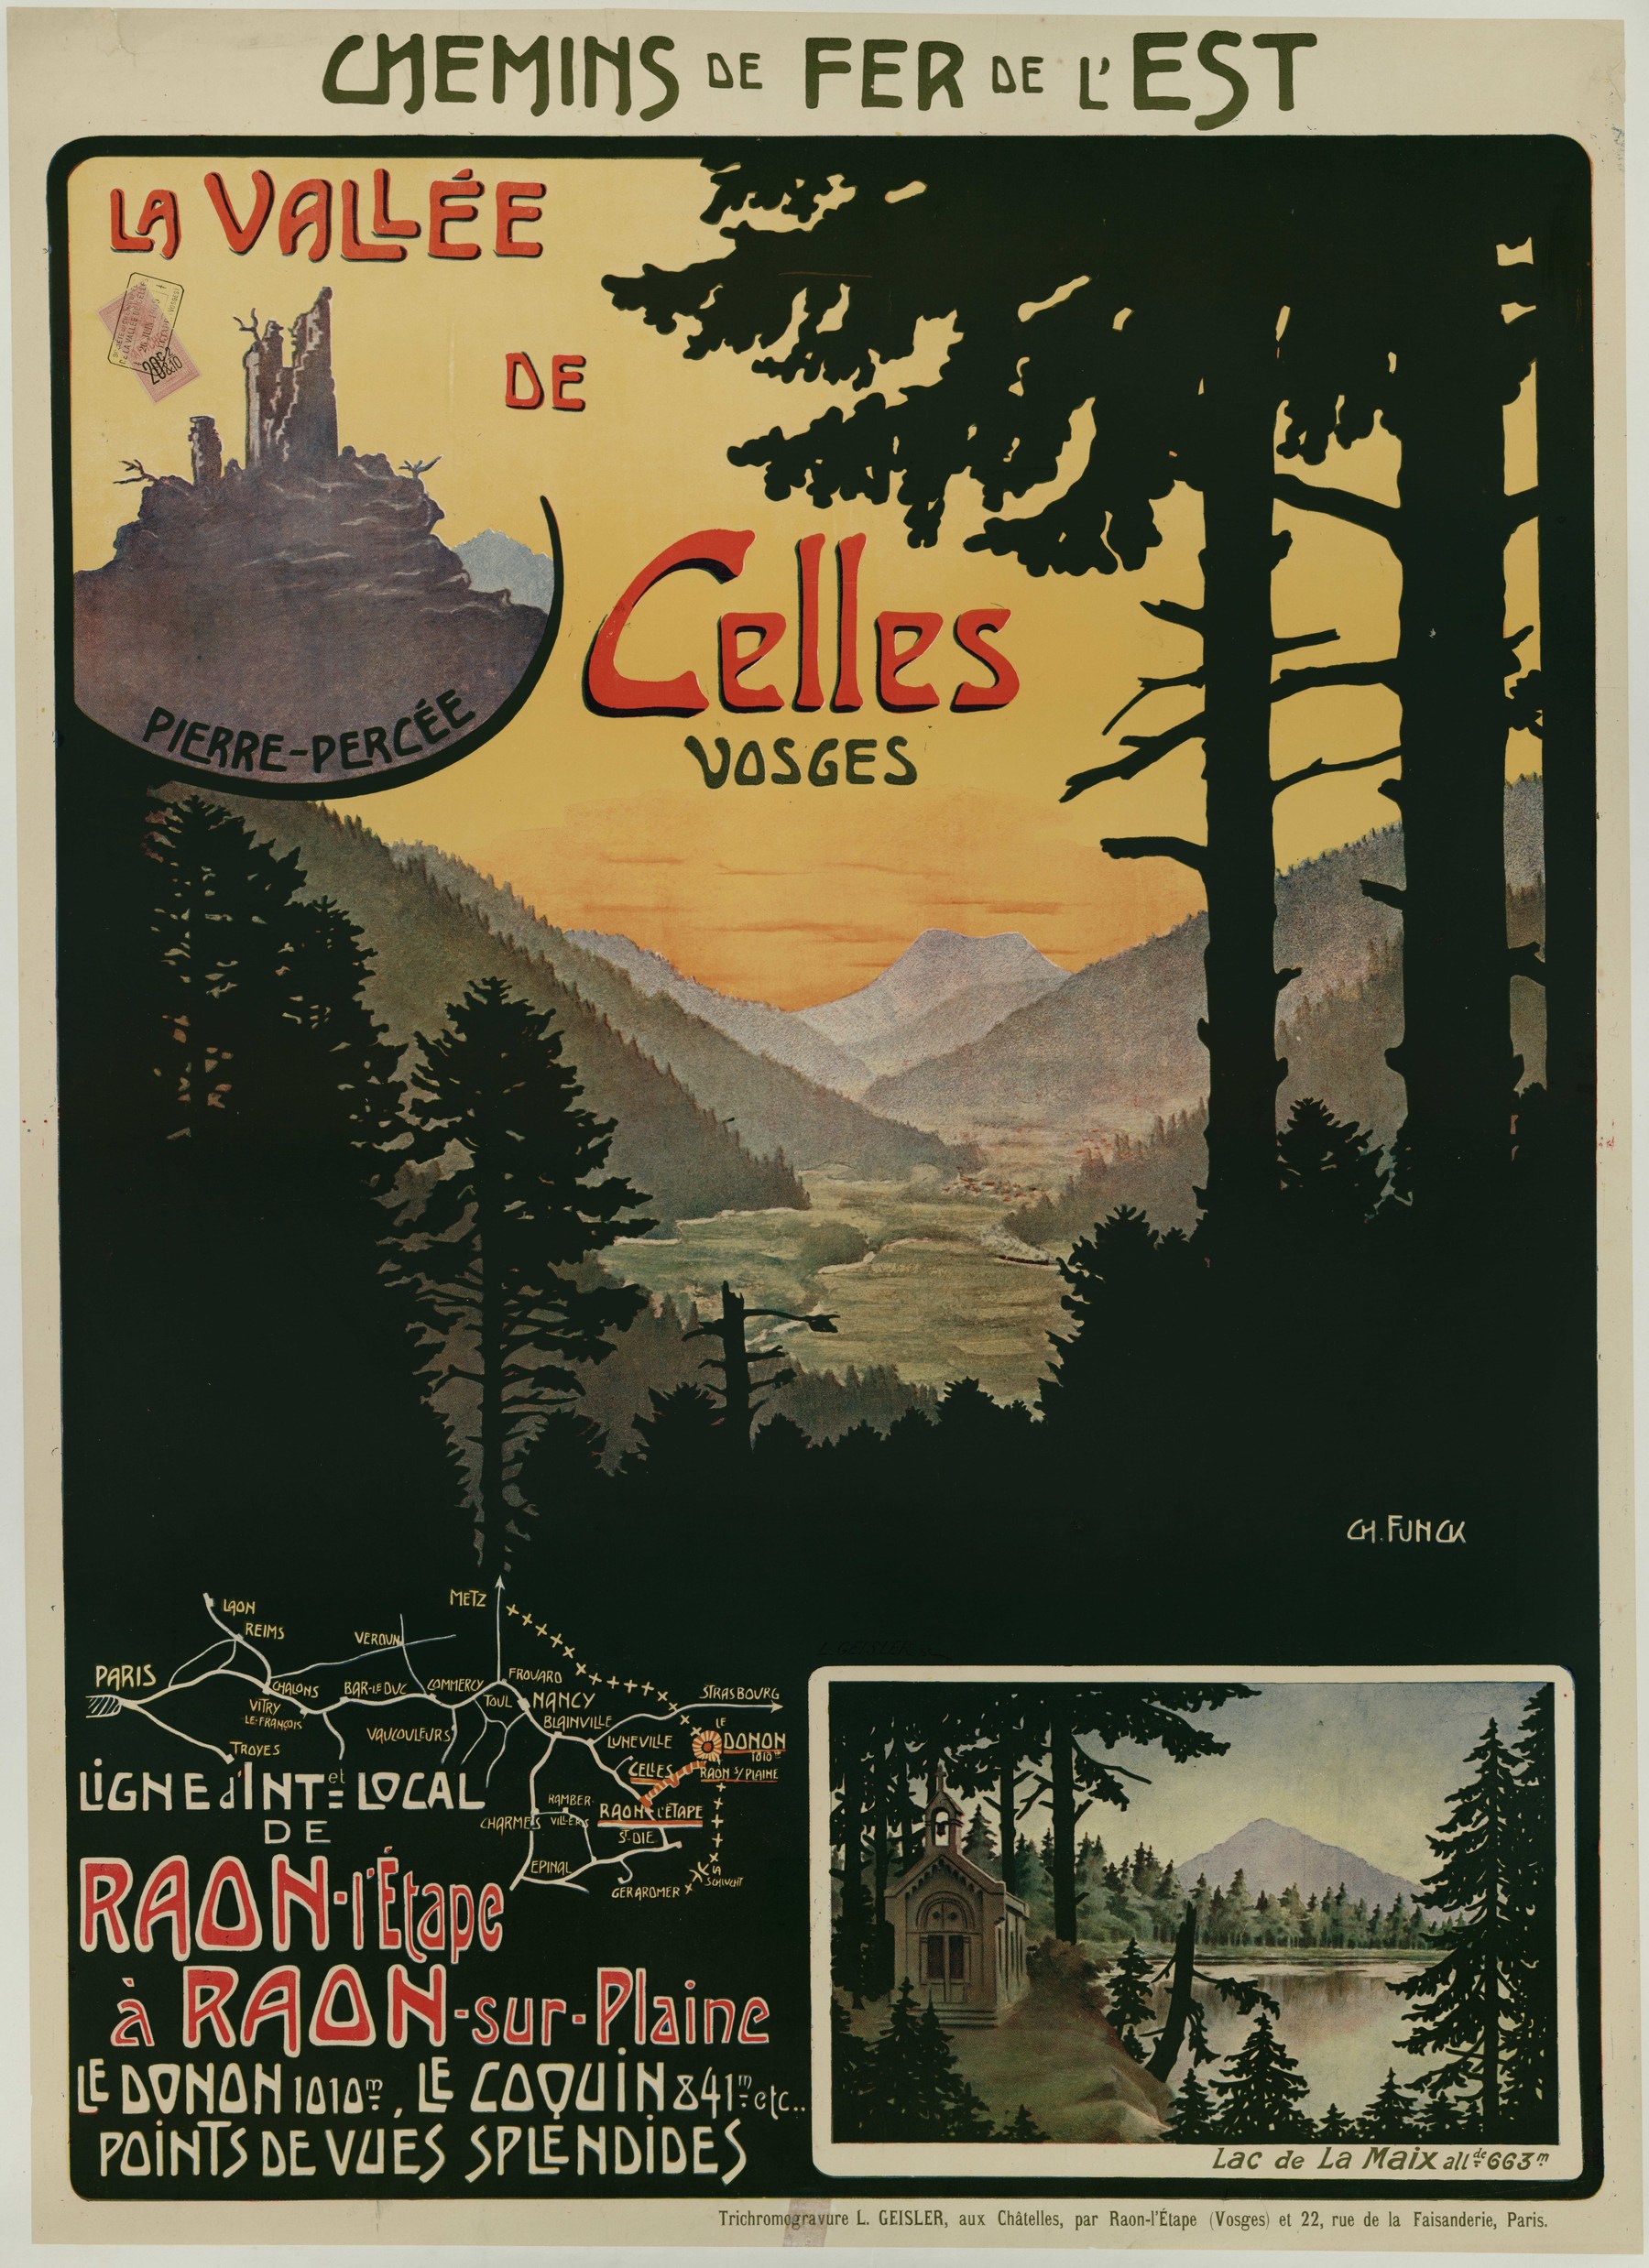 Contenu du Chemins de Fer de l'Est : La vallée de Celles Vosges. Ligne d'intérêt local de Raon l'Etape à Raon-sur-Plaine